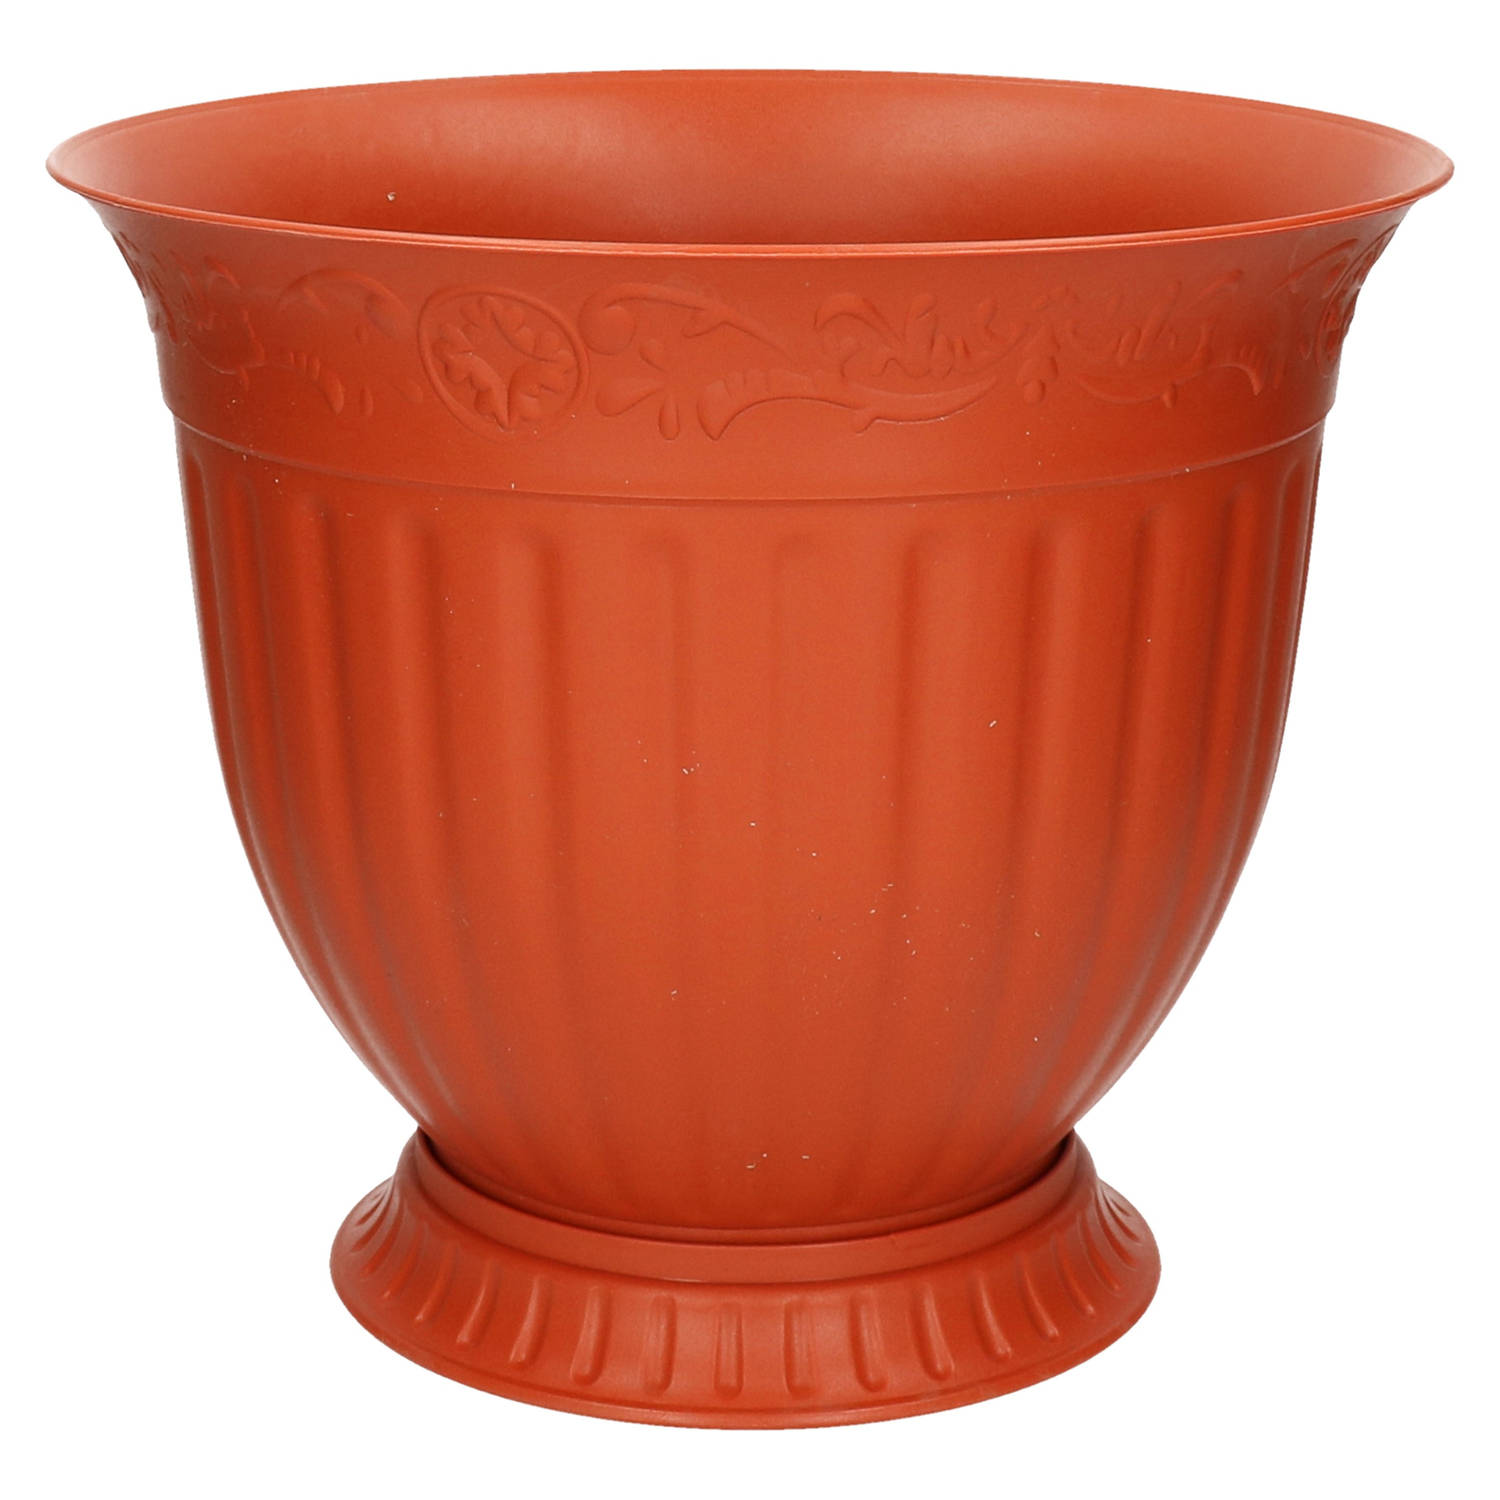 Terracotta Ronde Plantenpot-bloempot Grecia 30 X 34 Cm Met Schaal Kunststof Plantenpotten